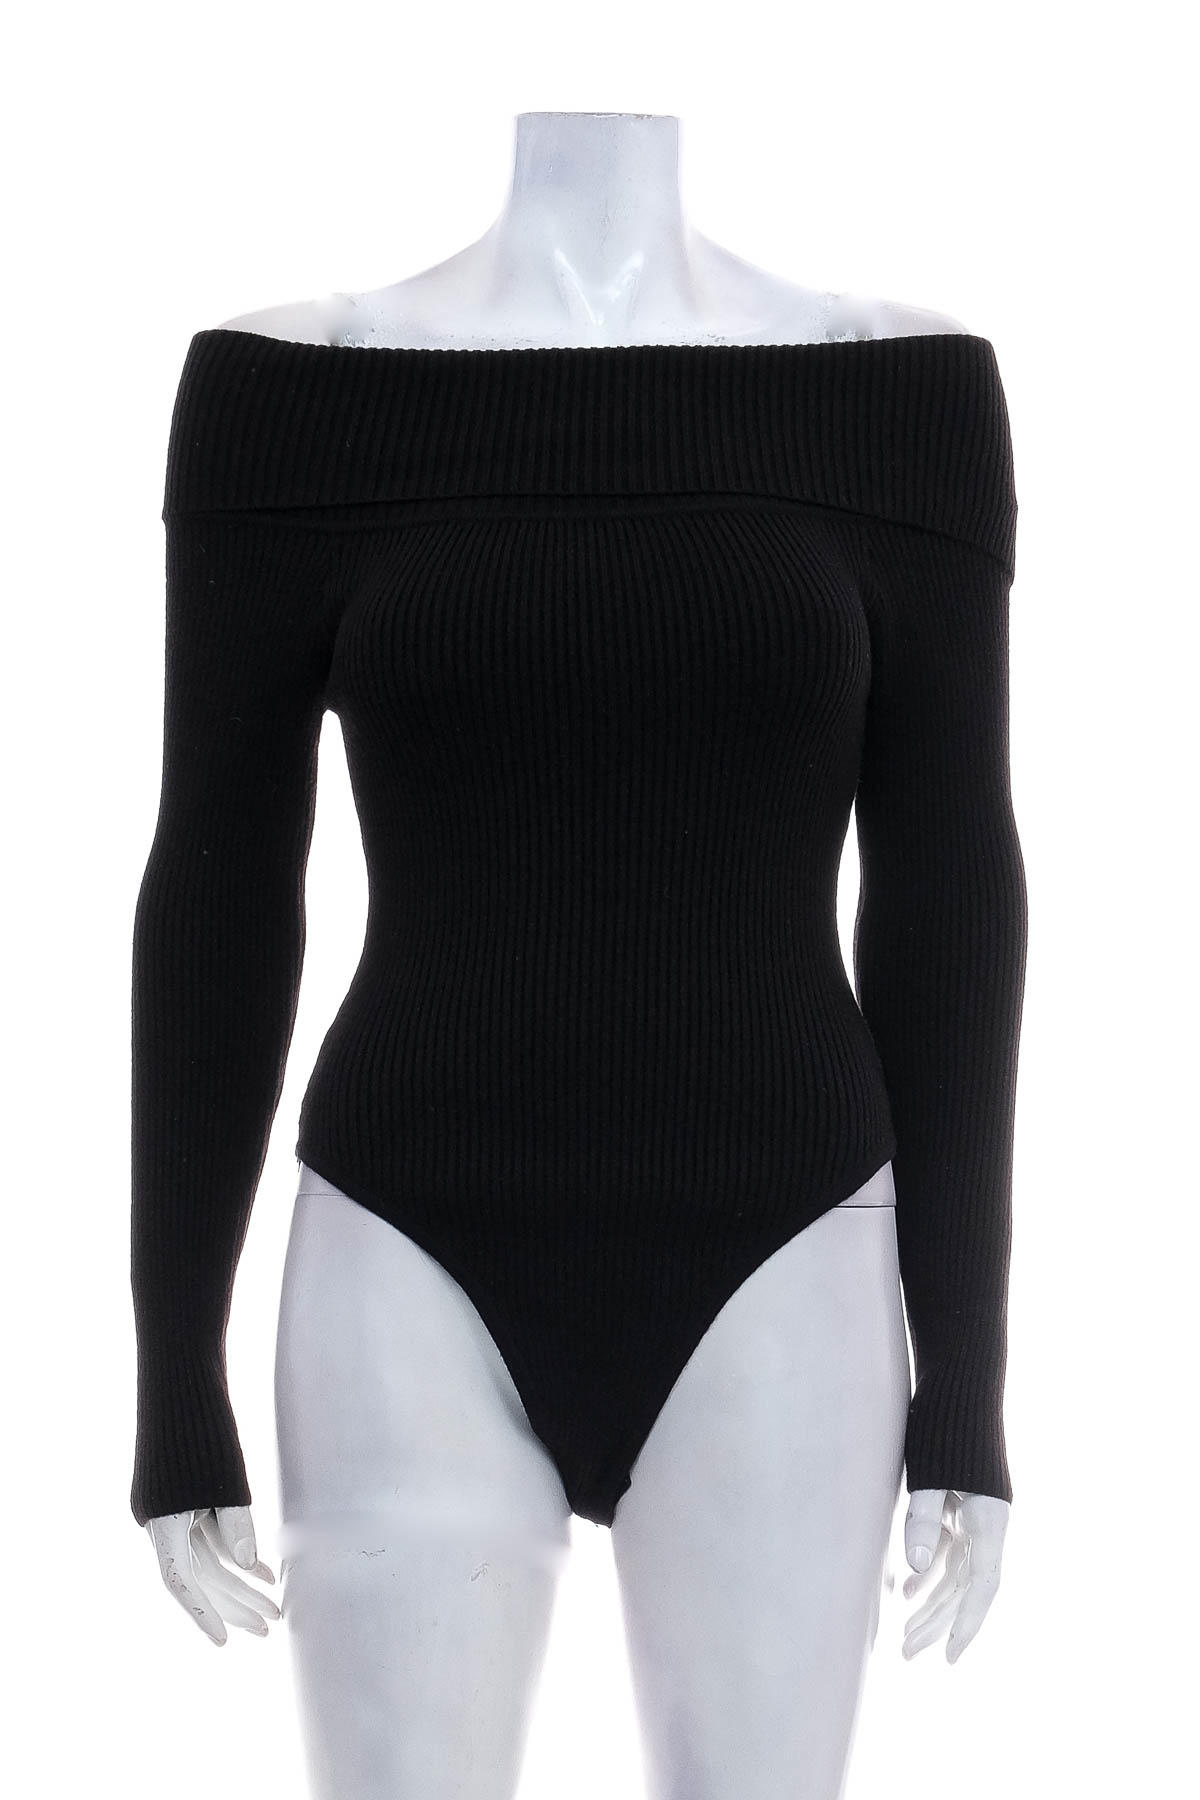 Woman's bodysuit - Petal & Pup - 0